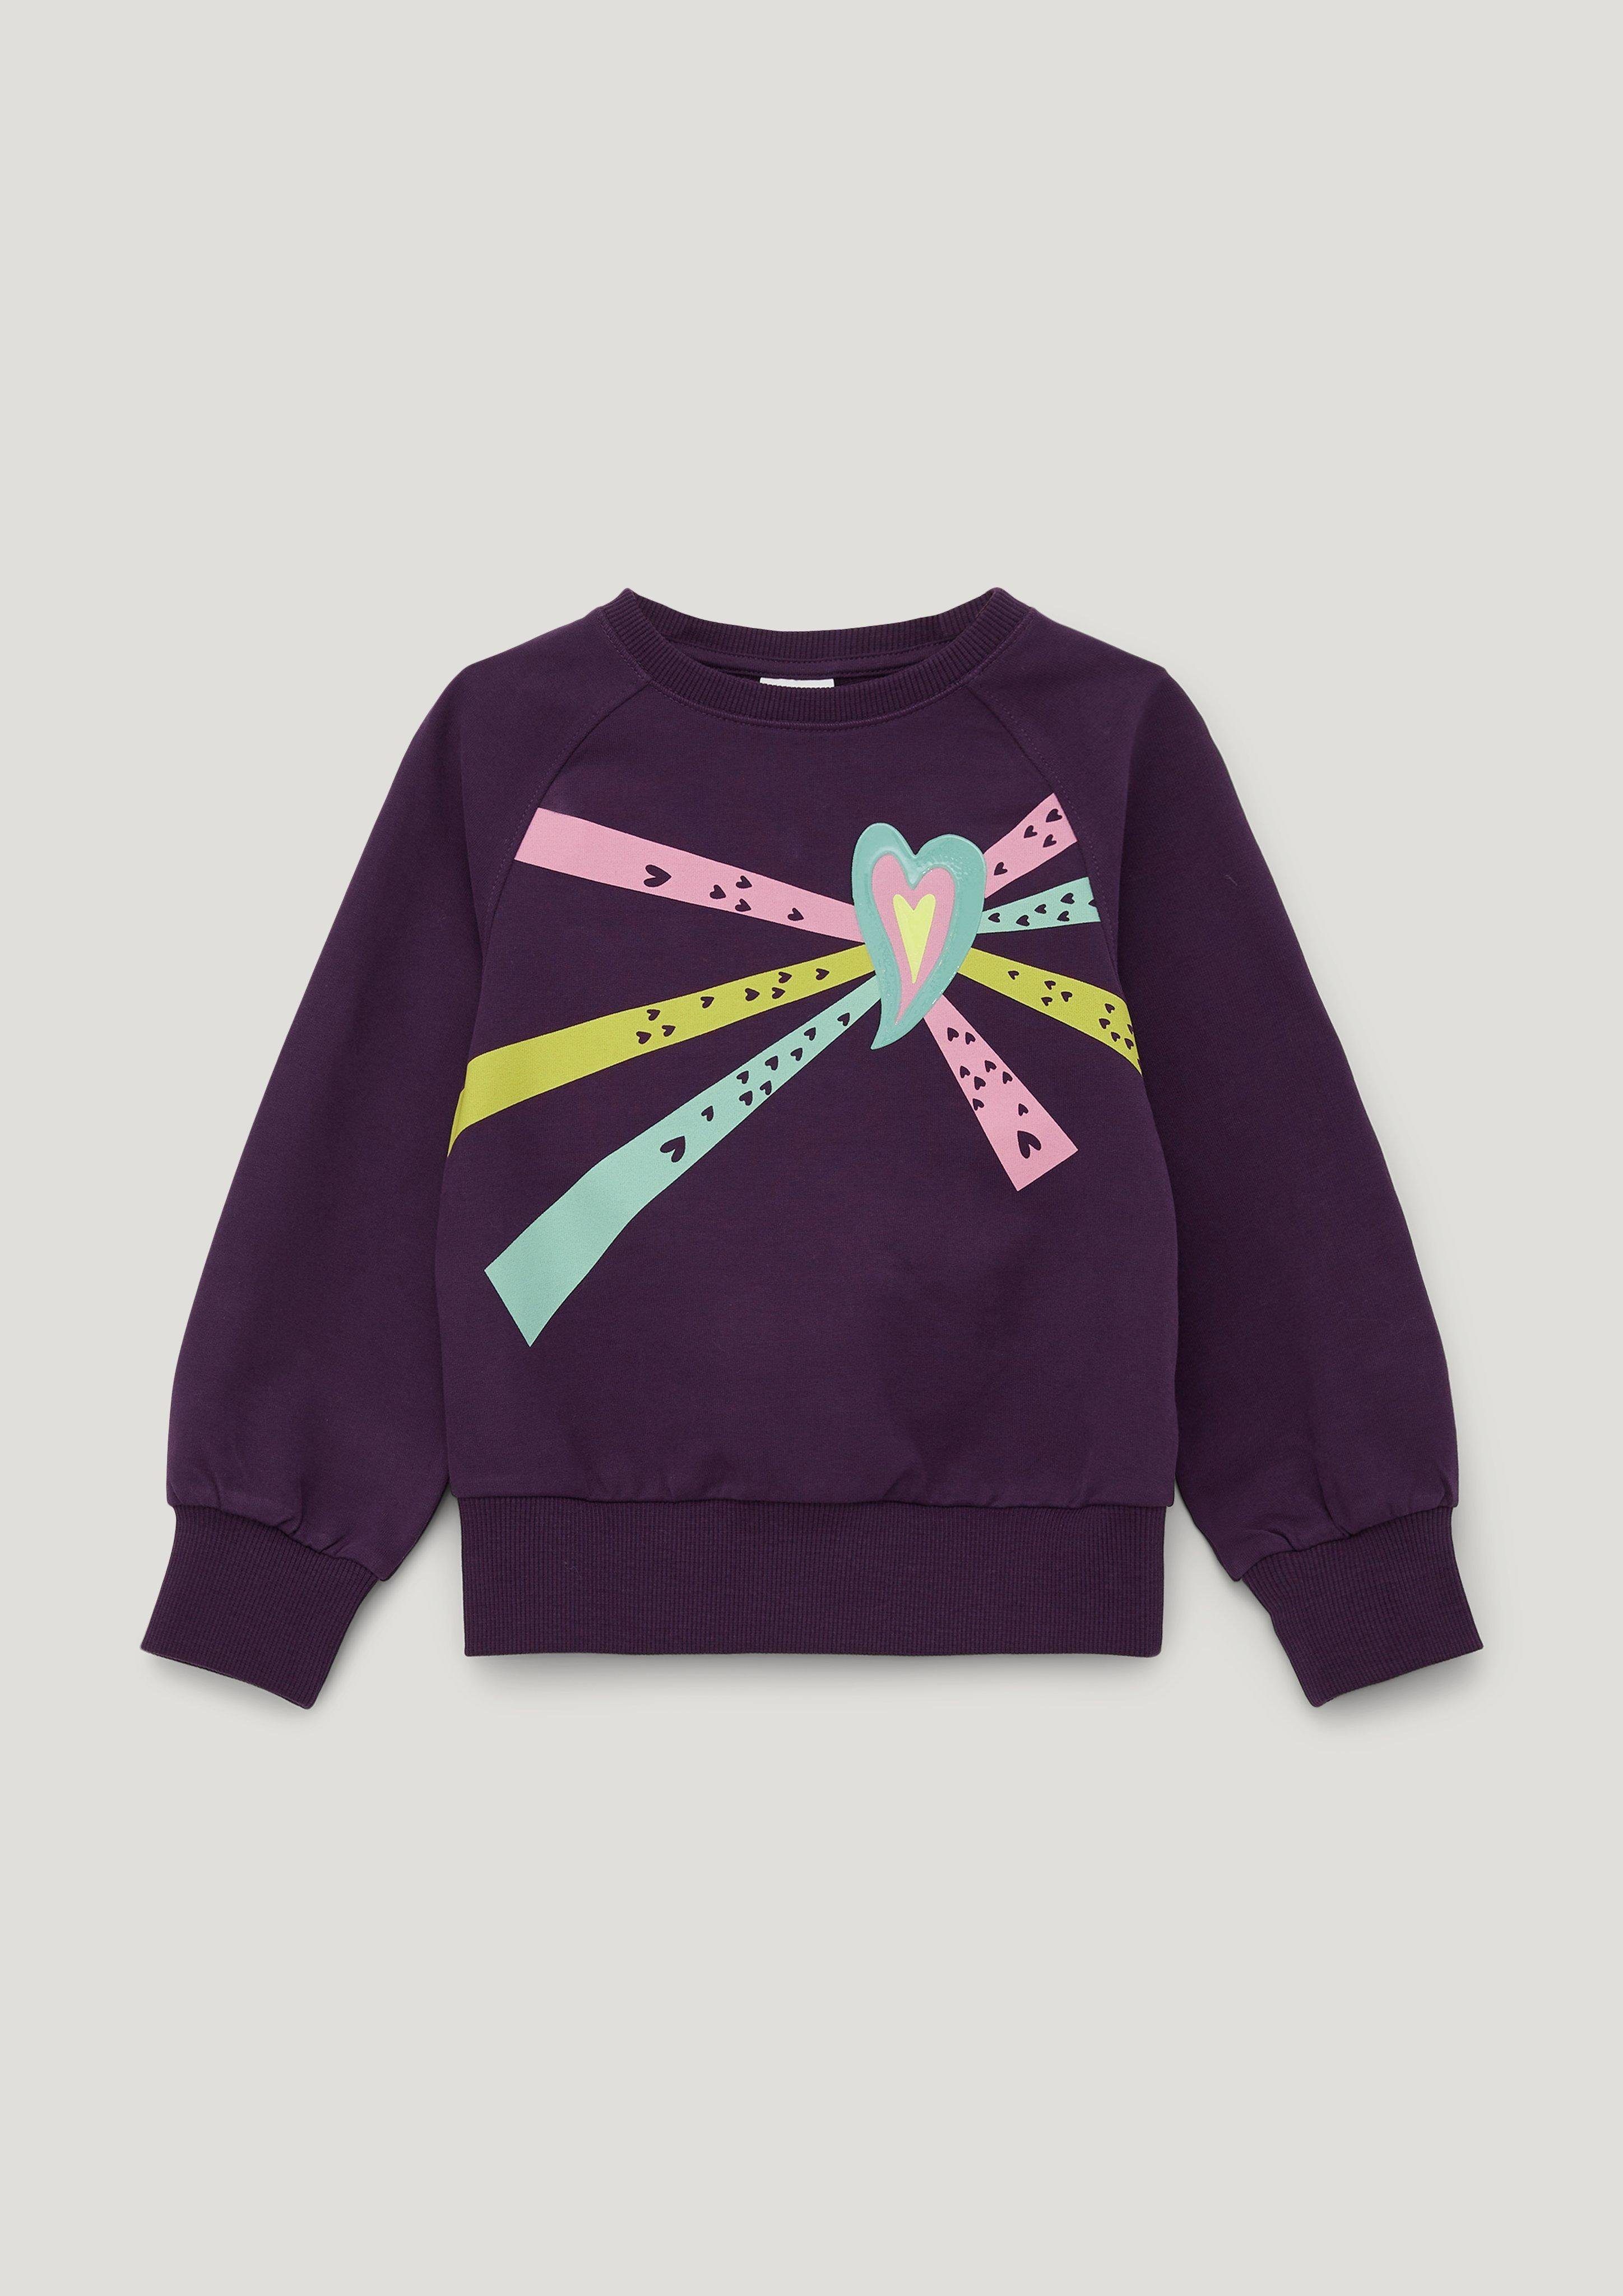 s.Oliver Sweatshirt Sweatshirt mit glänzendem Frontprint lila